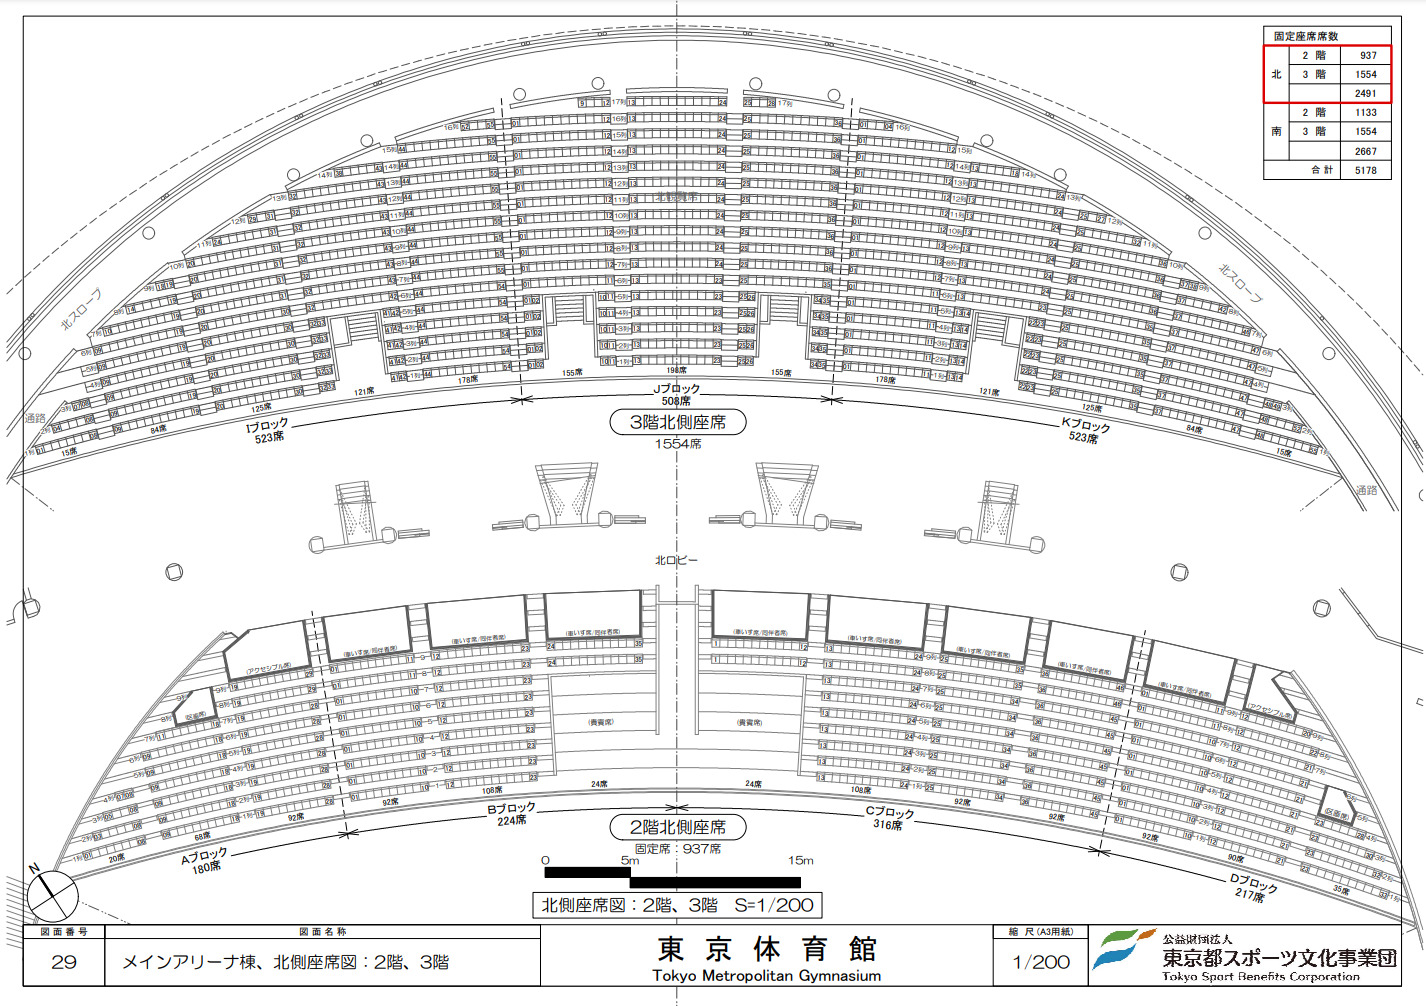 東京体育館メインアリーナ(北側)の座席表